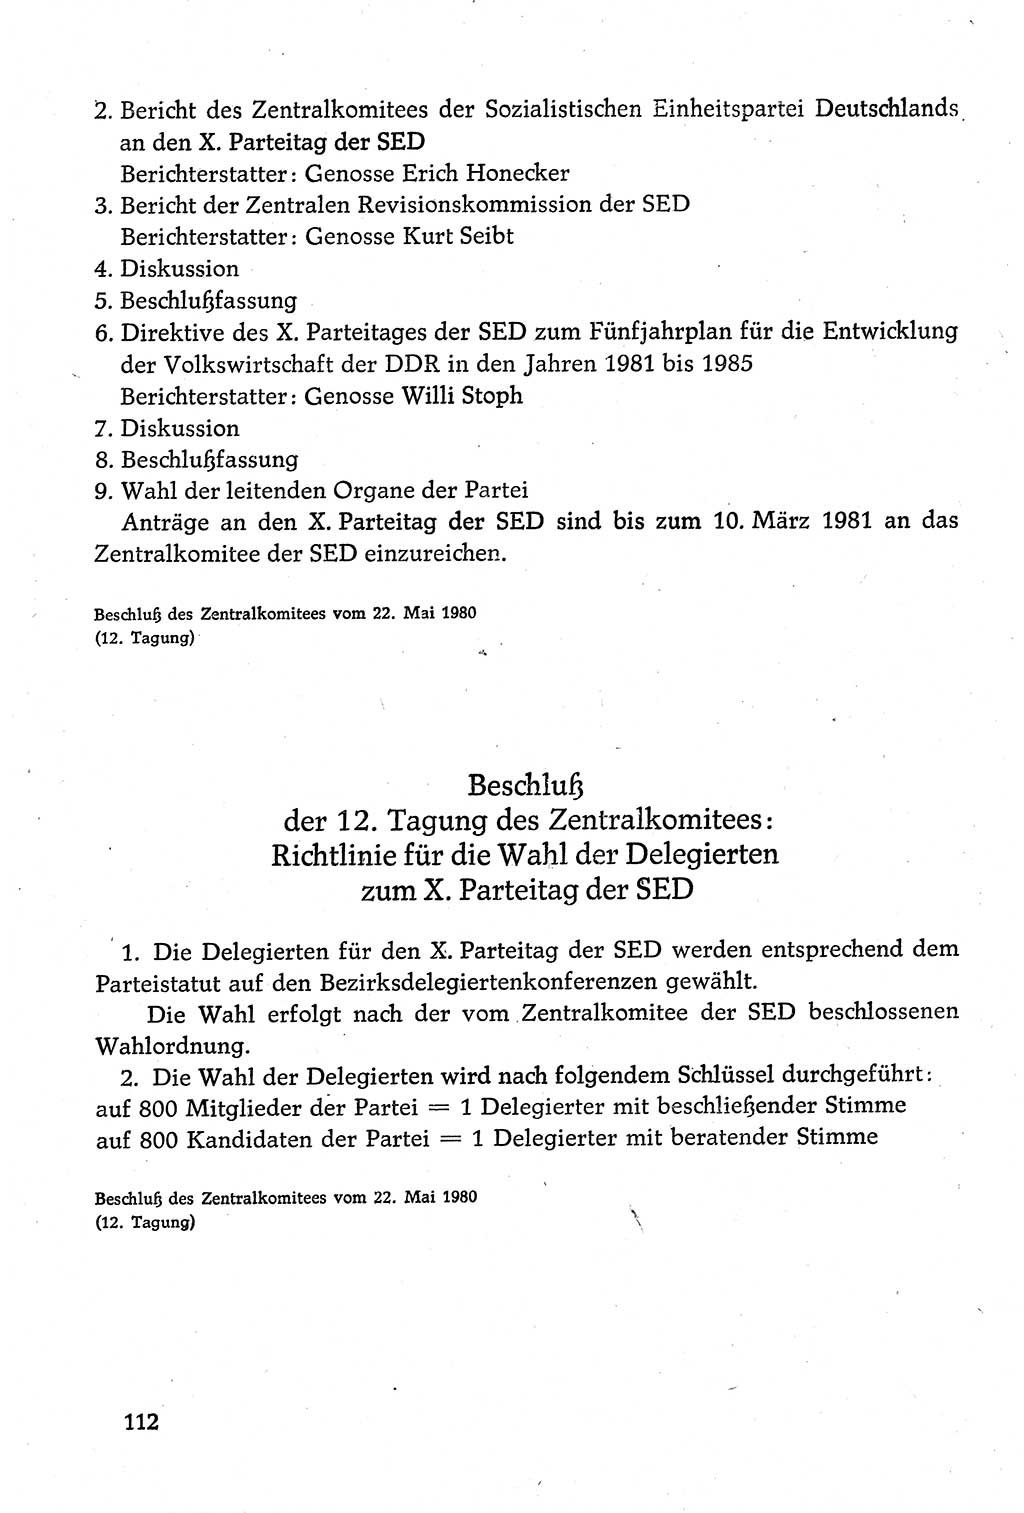 Dokumente der Sozialistischen Einheitspartei Deutschlands (SED) [Deutsche Demokratische Republik (DDR)] 1980-1981, Seite 112 (Dok. SED DDR 1980-1981, S. 112)